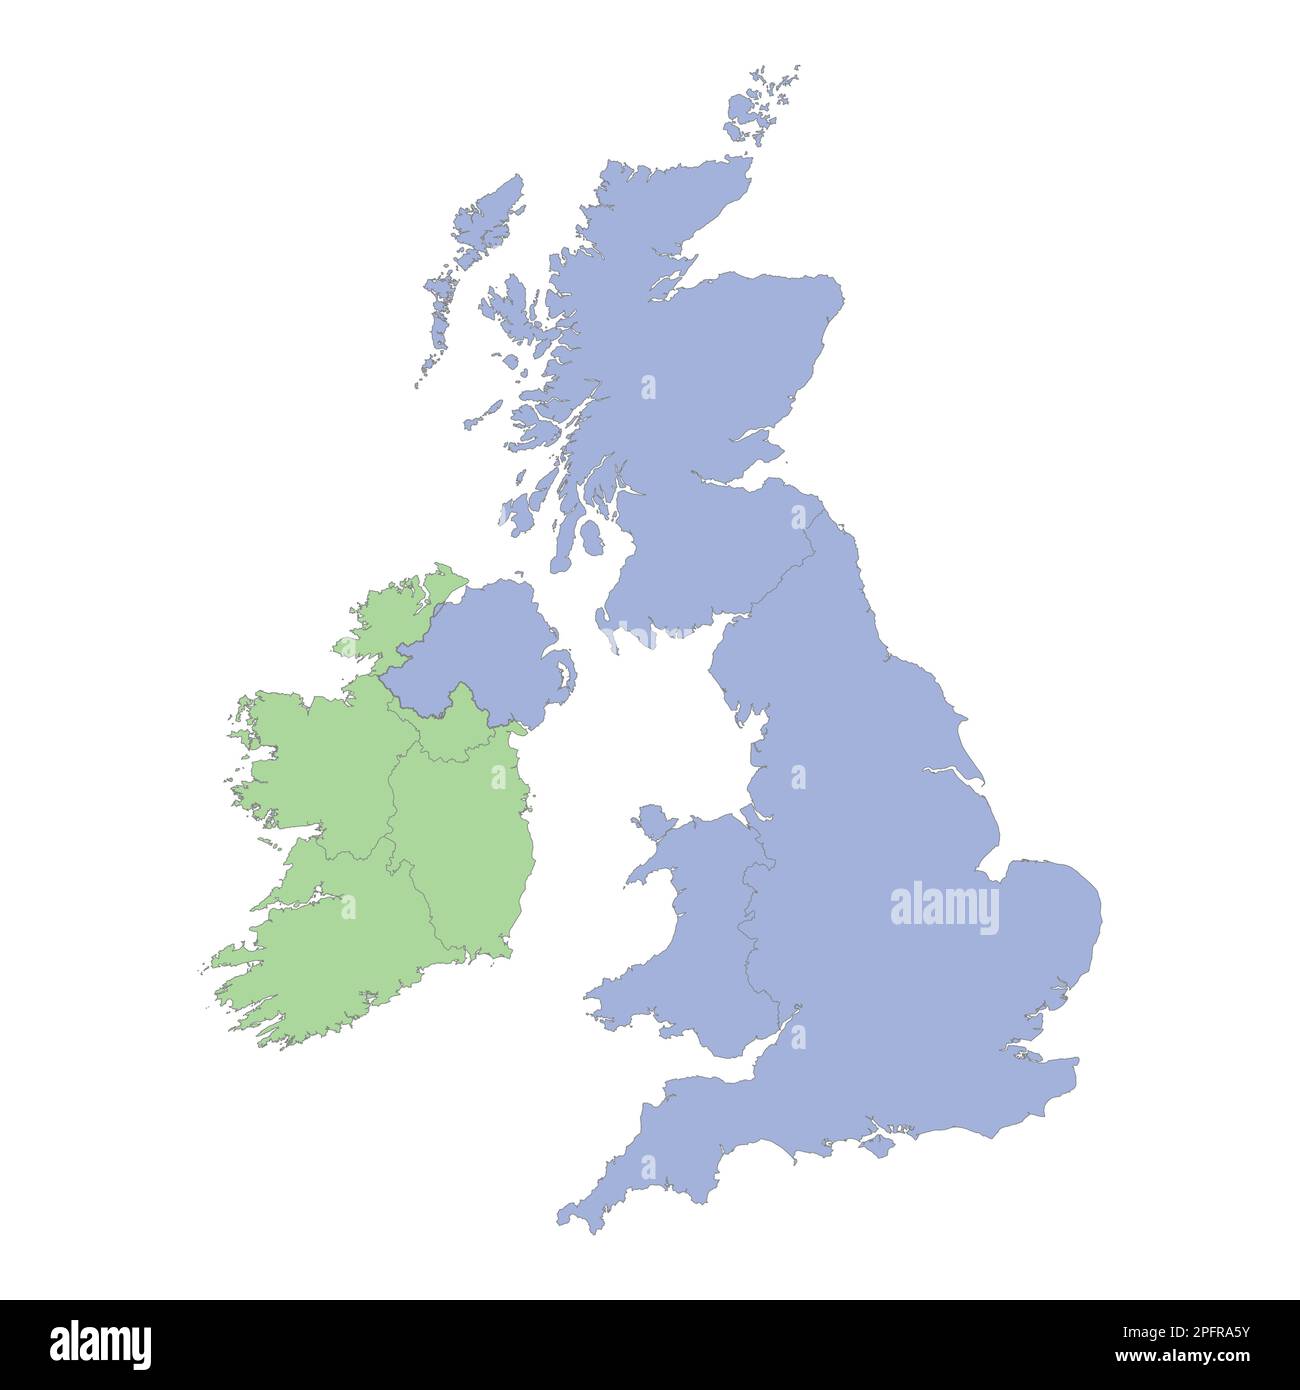 Mappa politica di alta qualità del Regno Unito e dell'Irlanda con i confini delle regioni o delle province. Illustrazione vettoriale Illustrazione Vettoriale